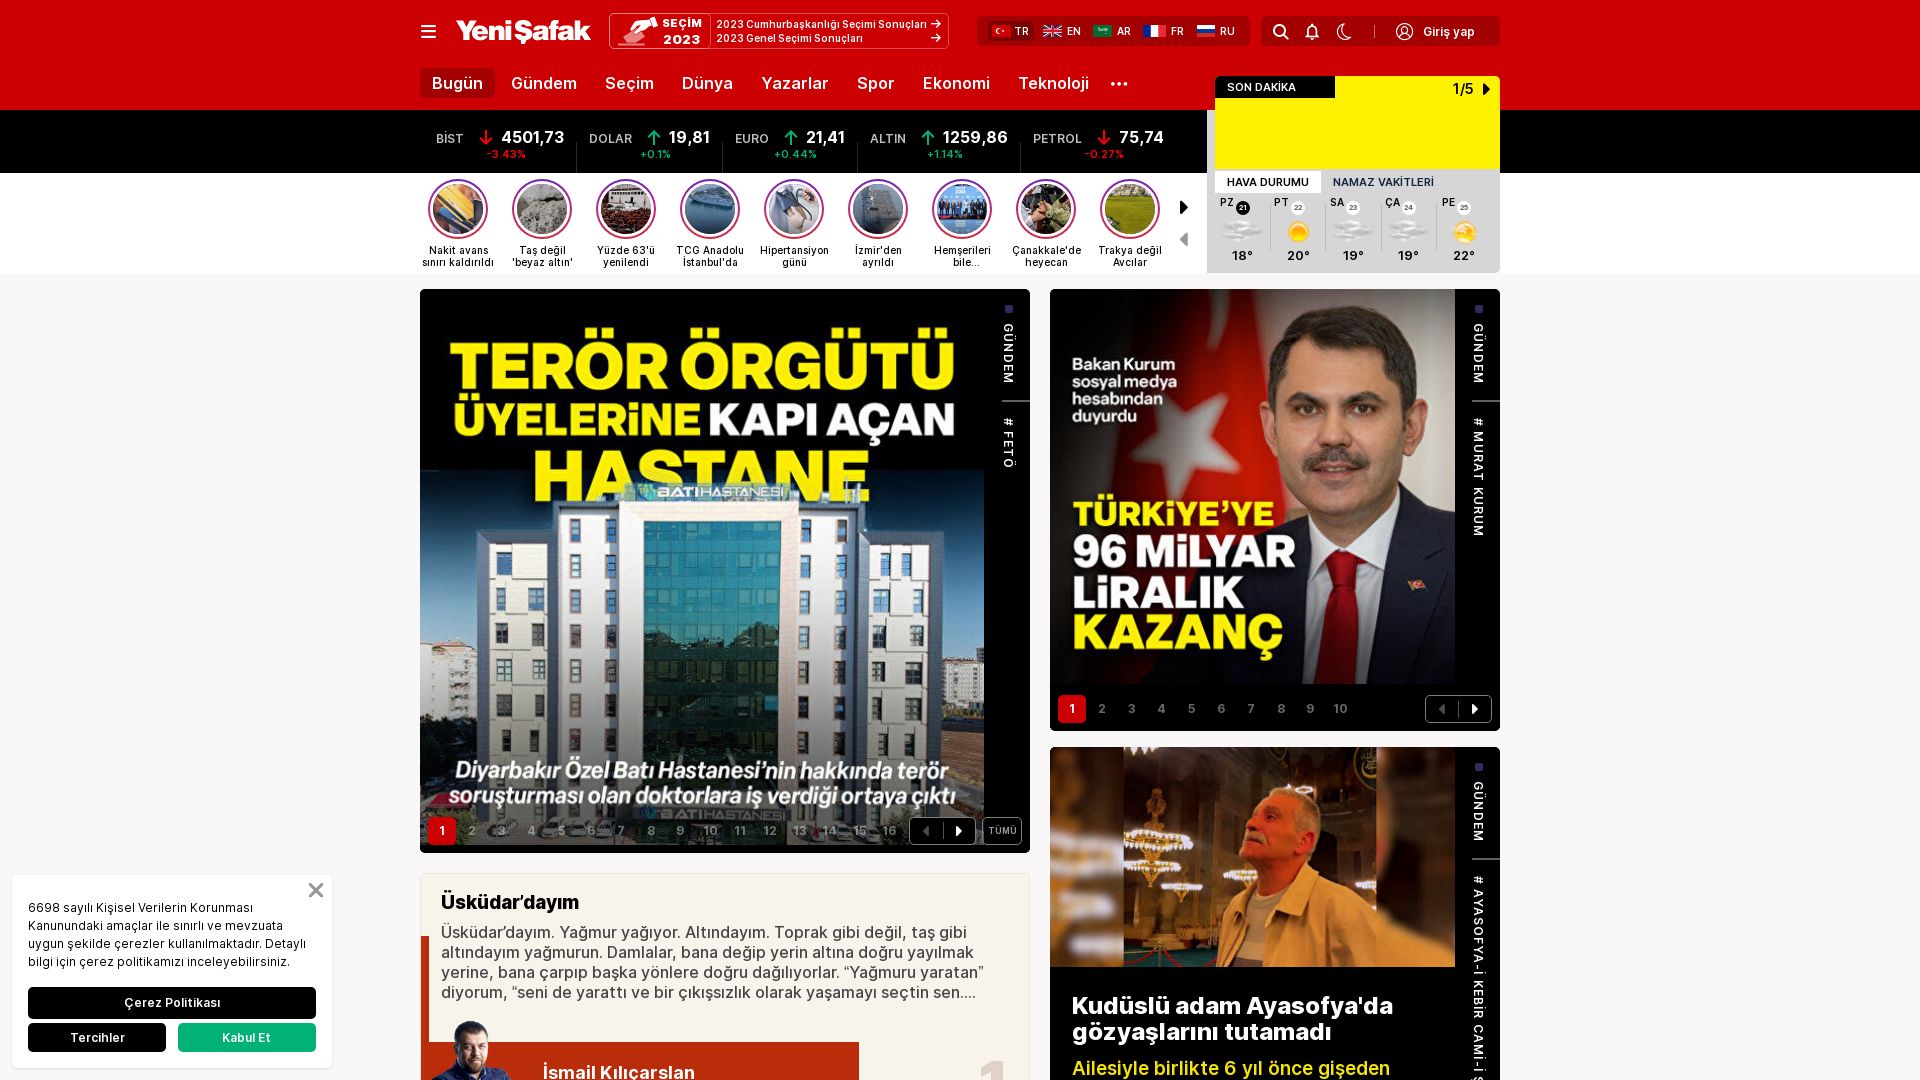 Stato del sito web yenisafak.com è   ONLINE